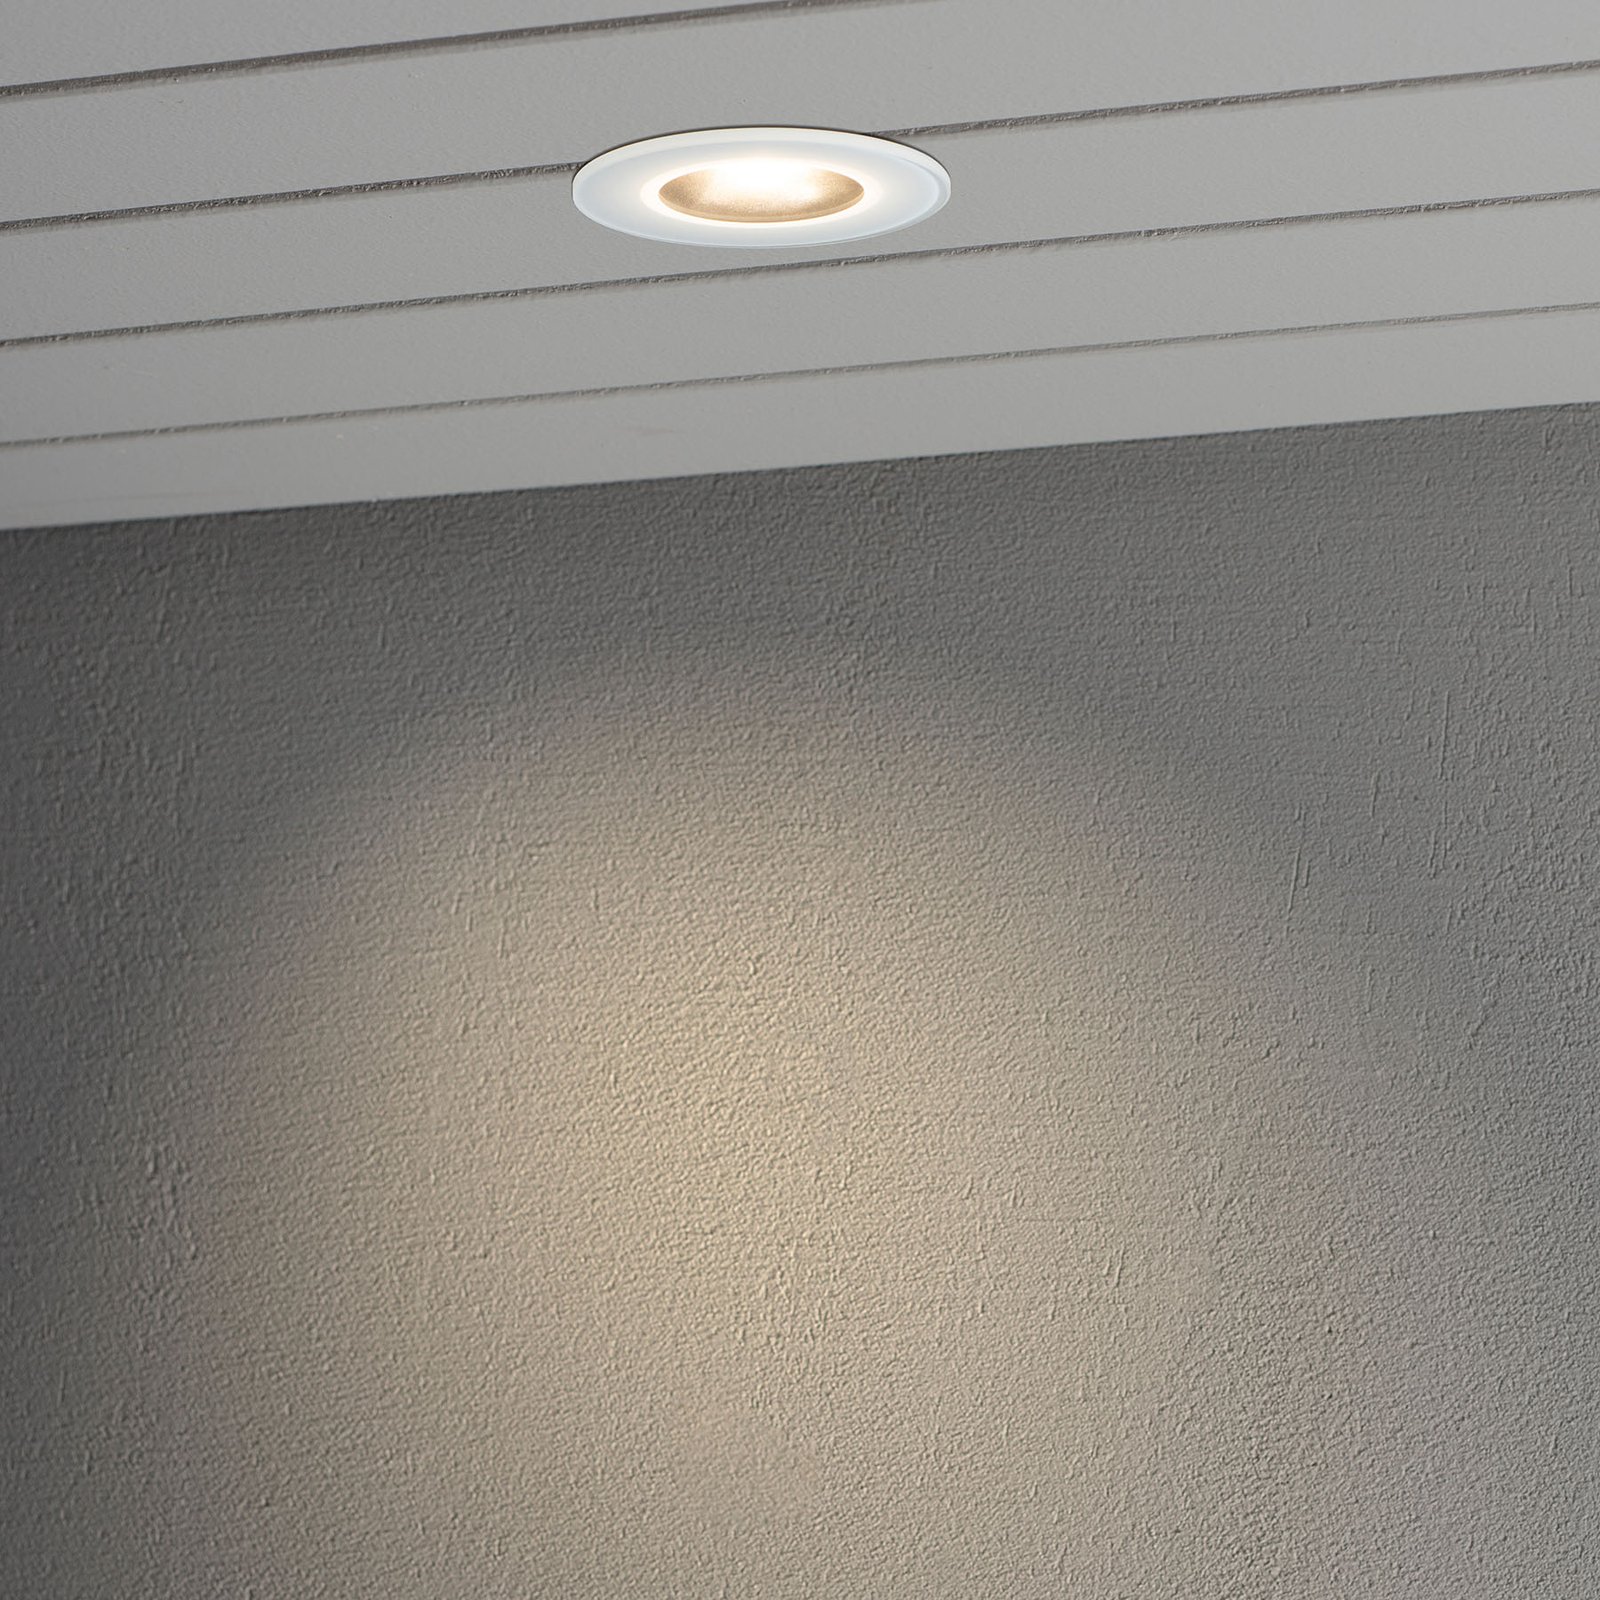 LED-downlight 7875 tak utendørs, hvit